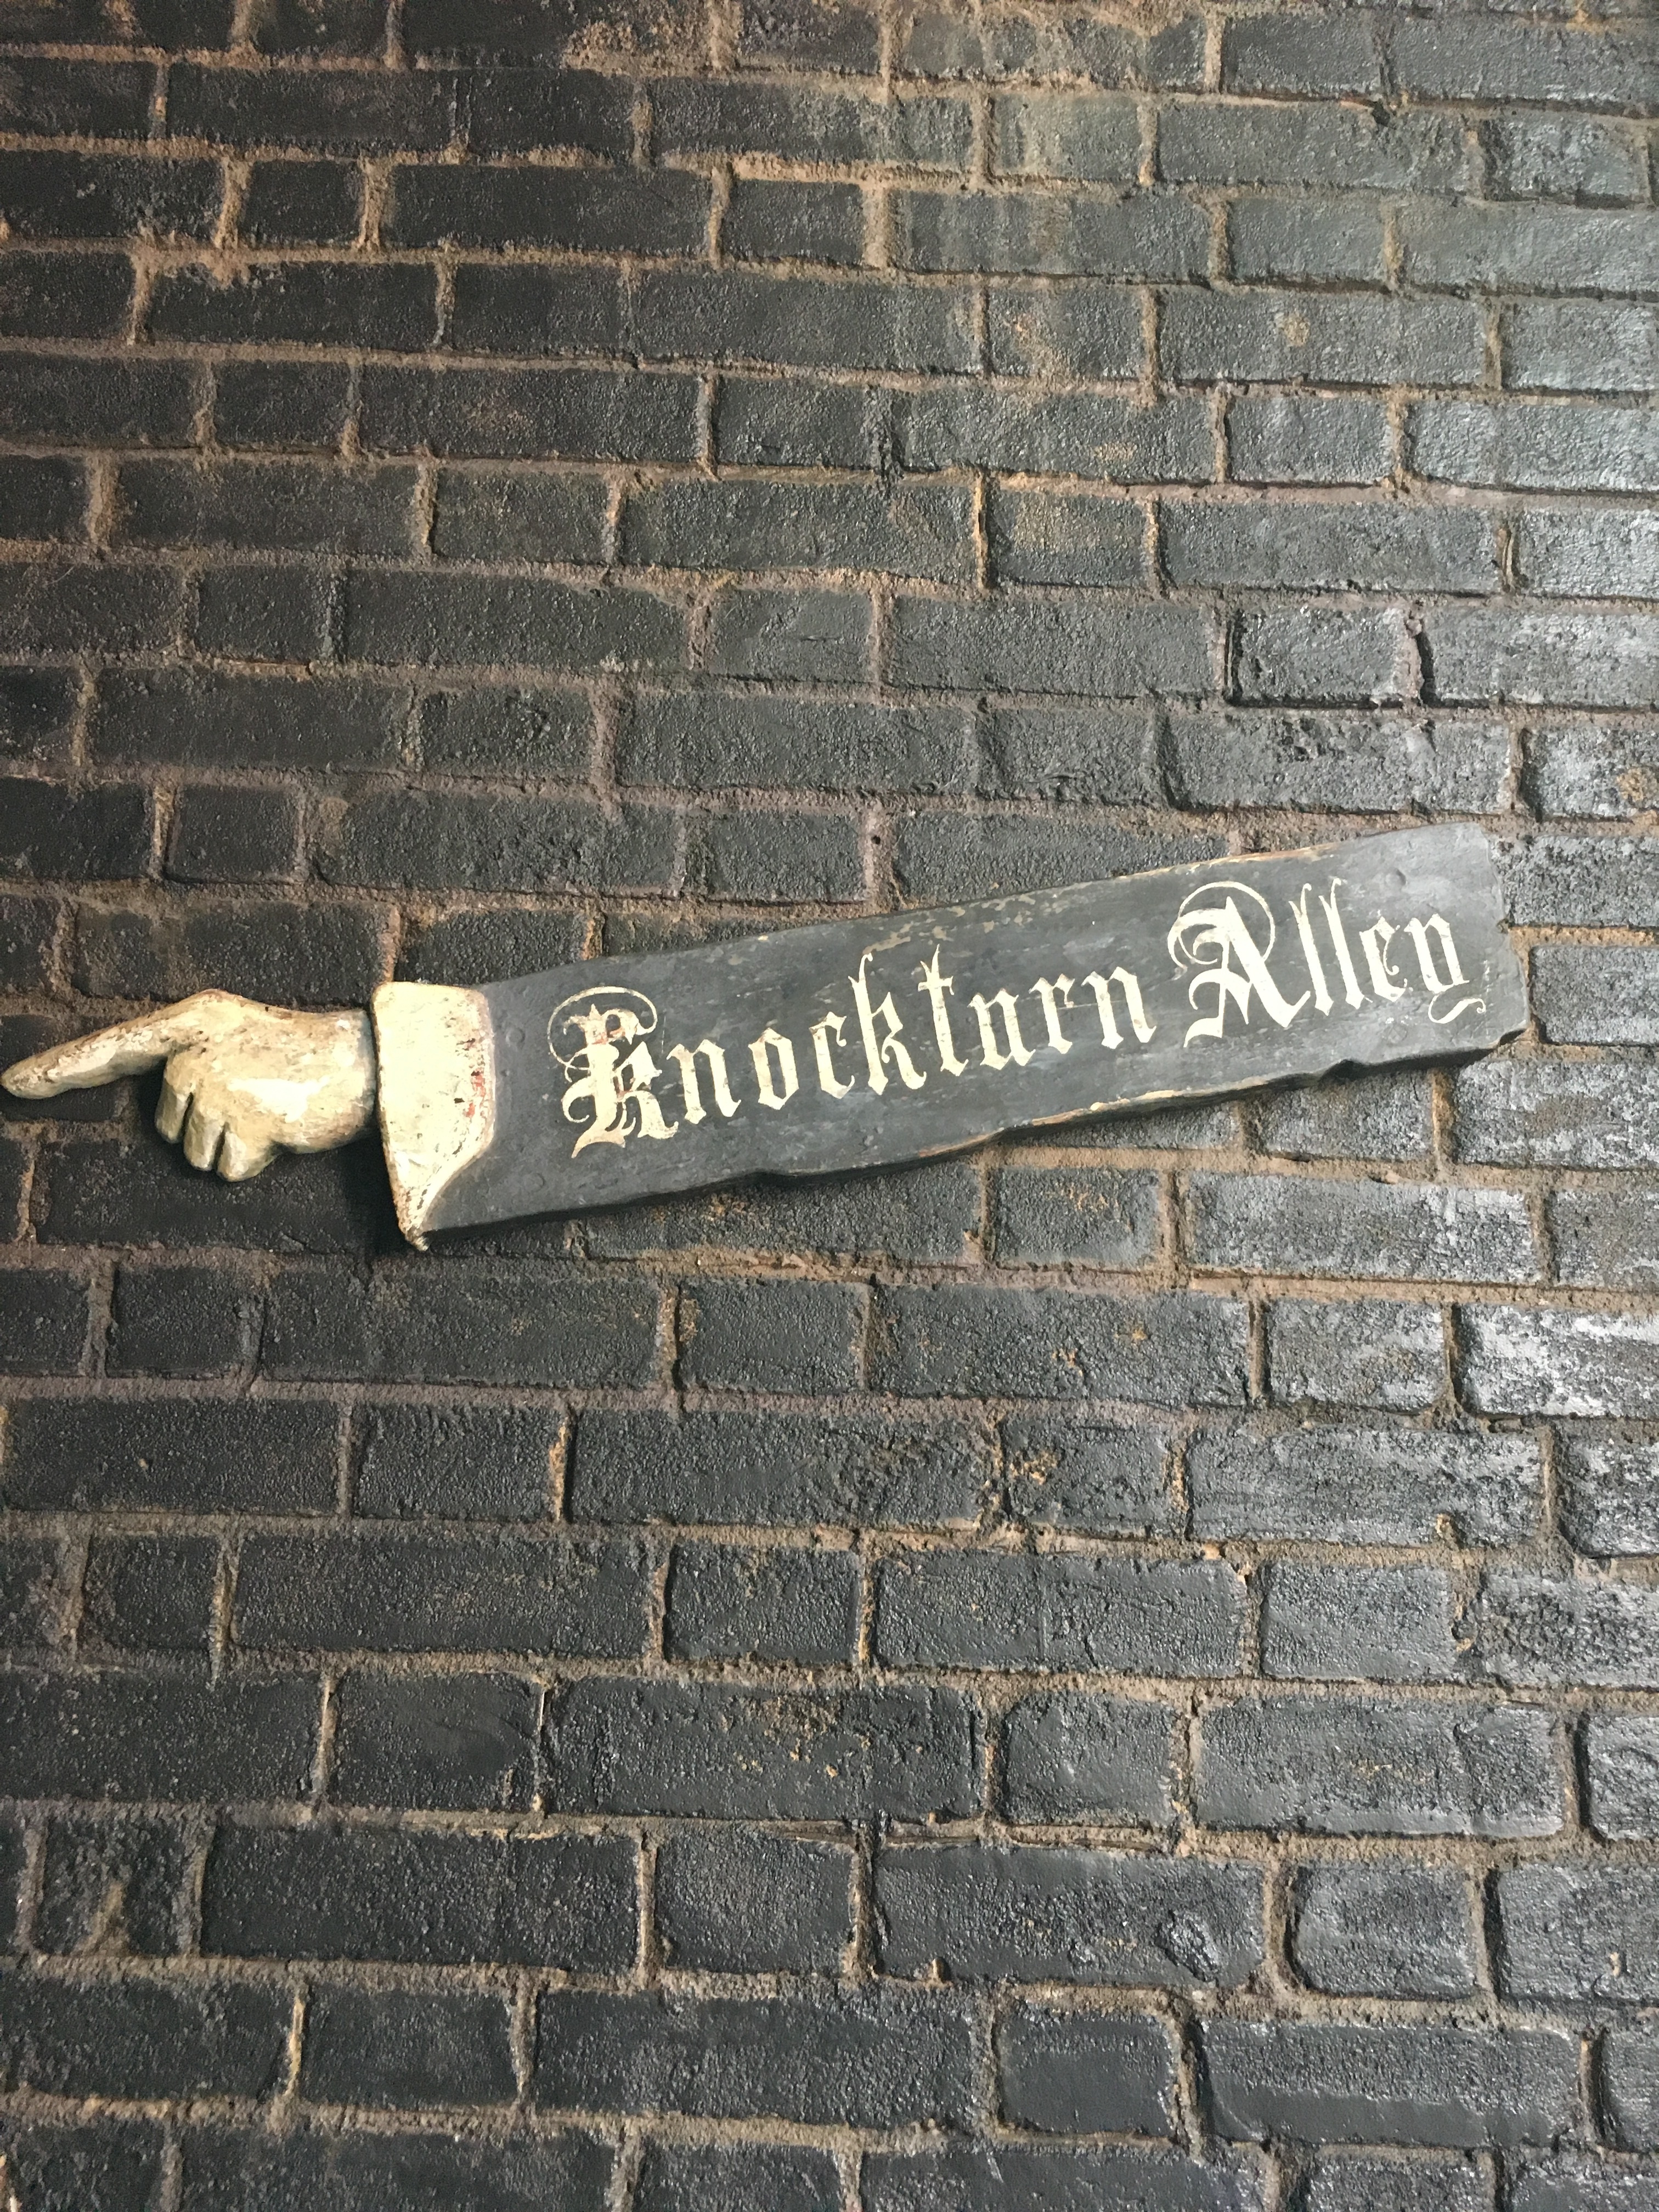 the entrance sign for Knockturn Alley